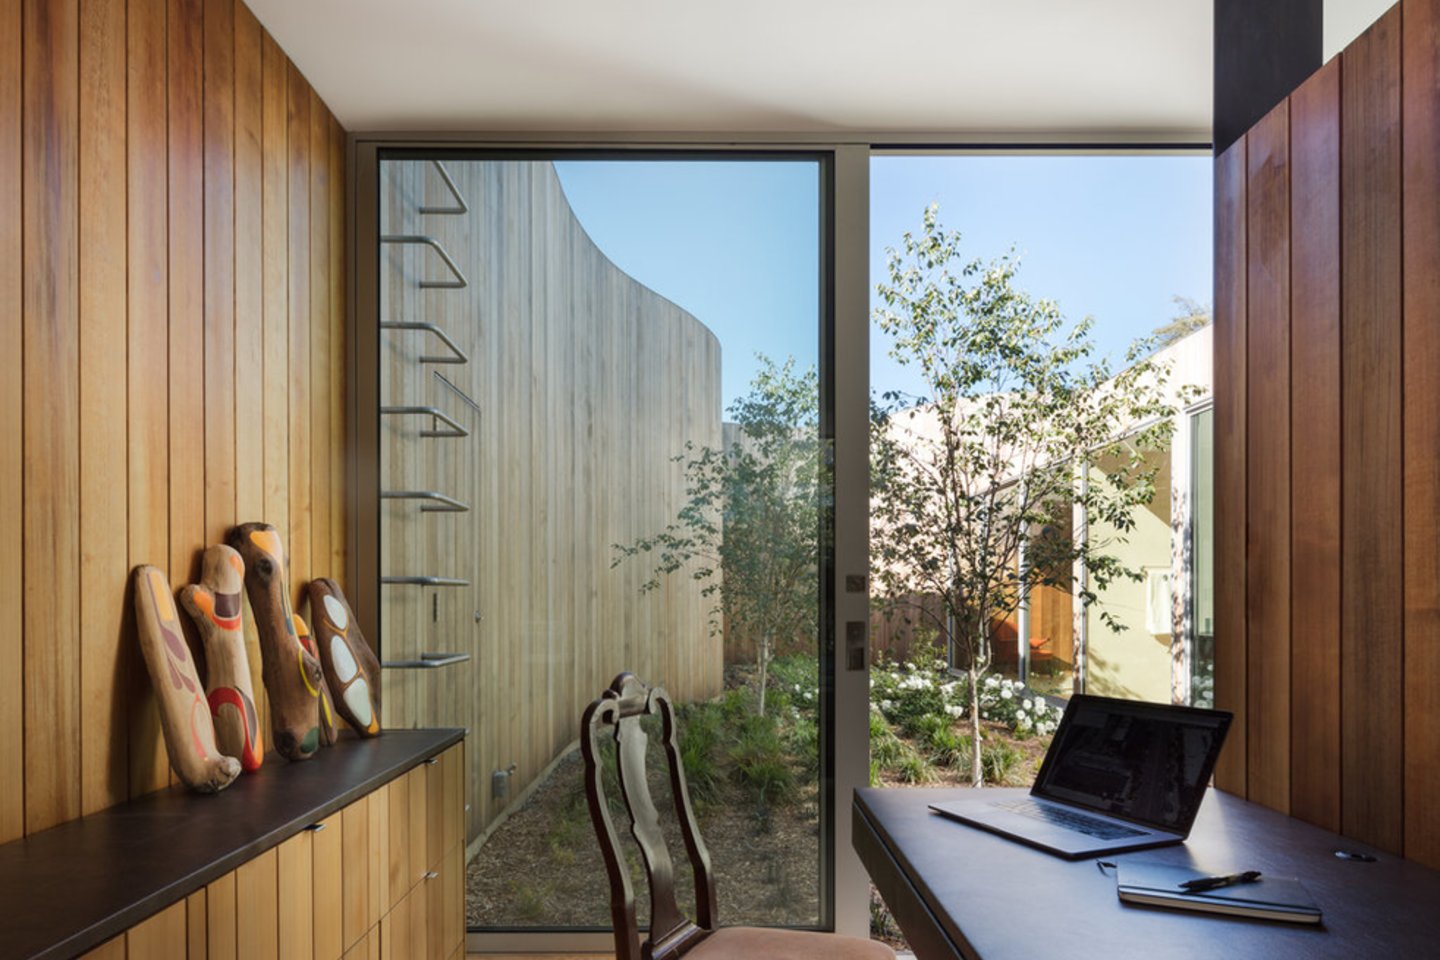 Vietoj to, kad namų šeimininkė turėtų gražų vaizdą dairydamasi horizontaliai, architektai apžvalgos lauką sufokusavo vertikaliai.<br>D.Bradley/archdaily.com nuotr.